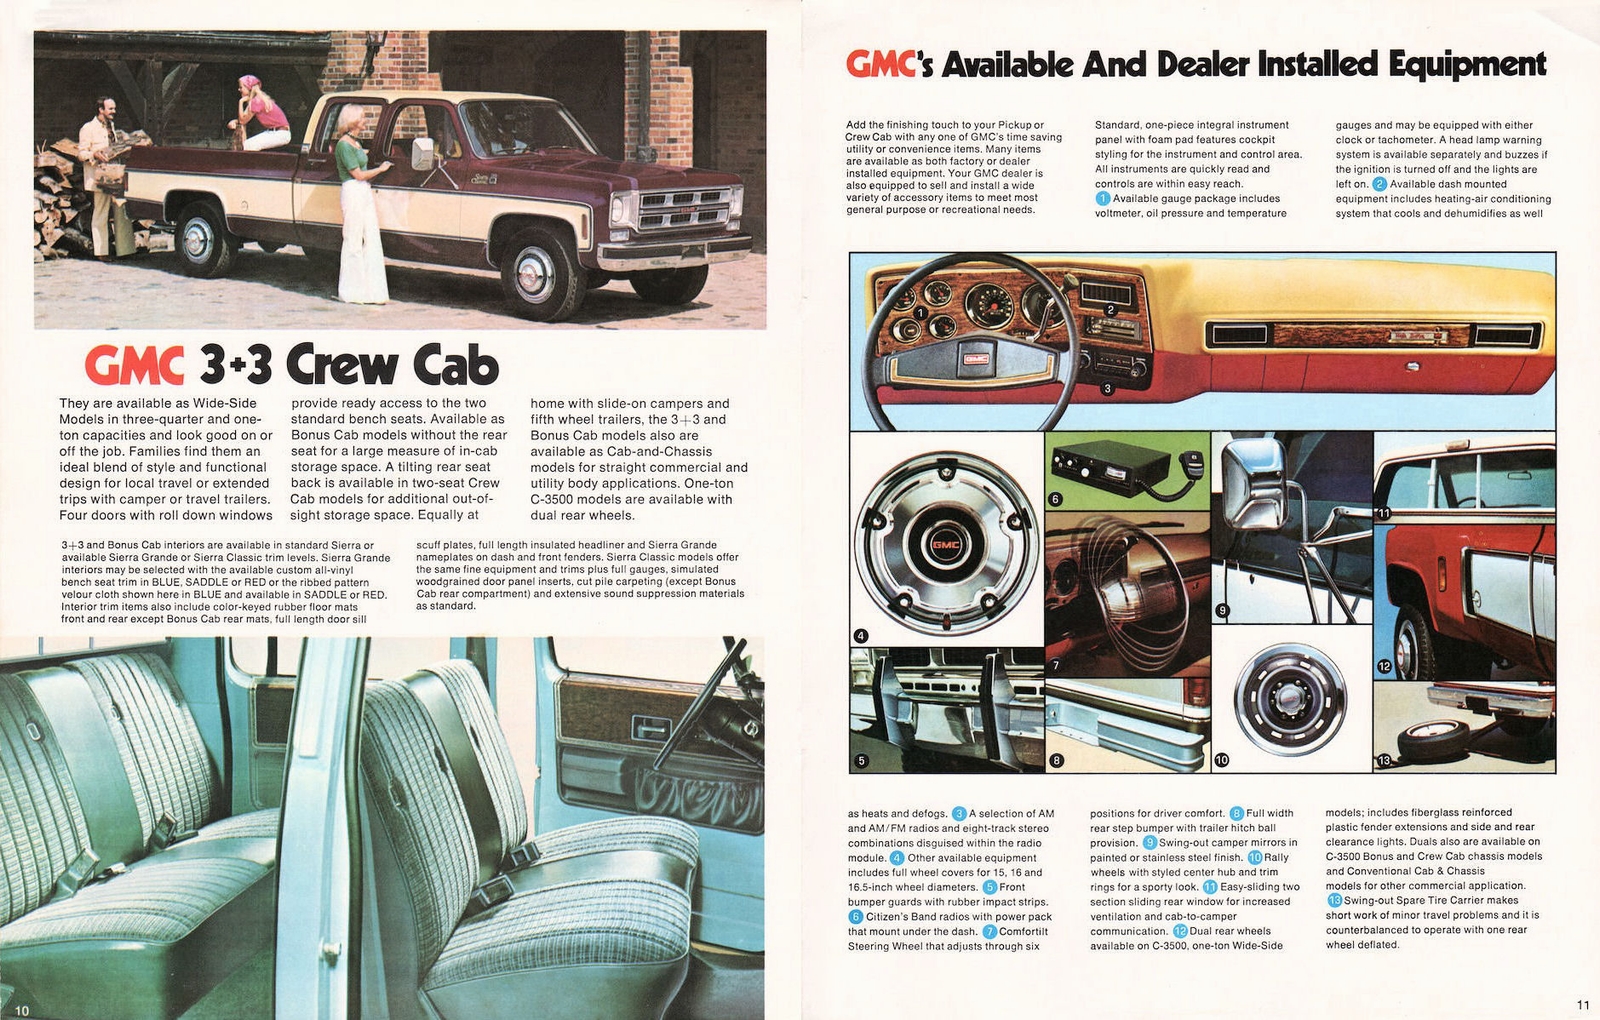 n_1976 GMC Pickups-10-11.jpg